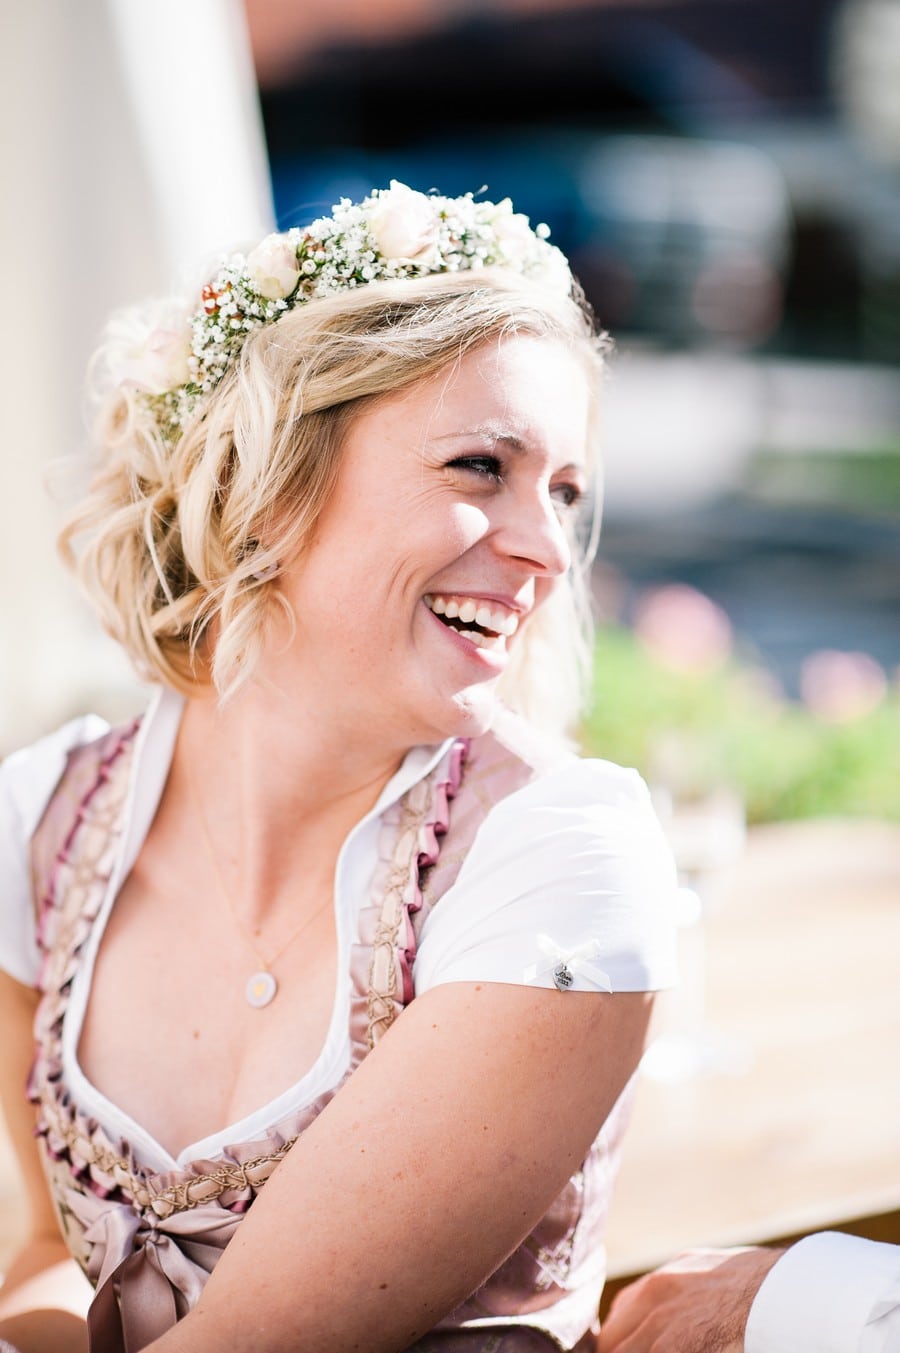 Eine Hochzeit am Tegernsee, stilecht im Dirnd und mit Feier in der Alpenrose